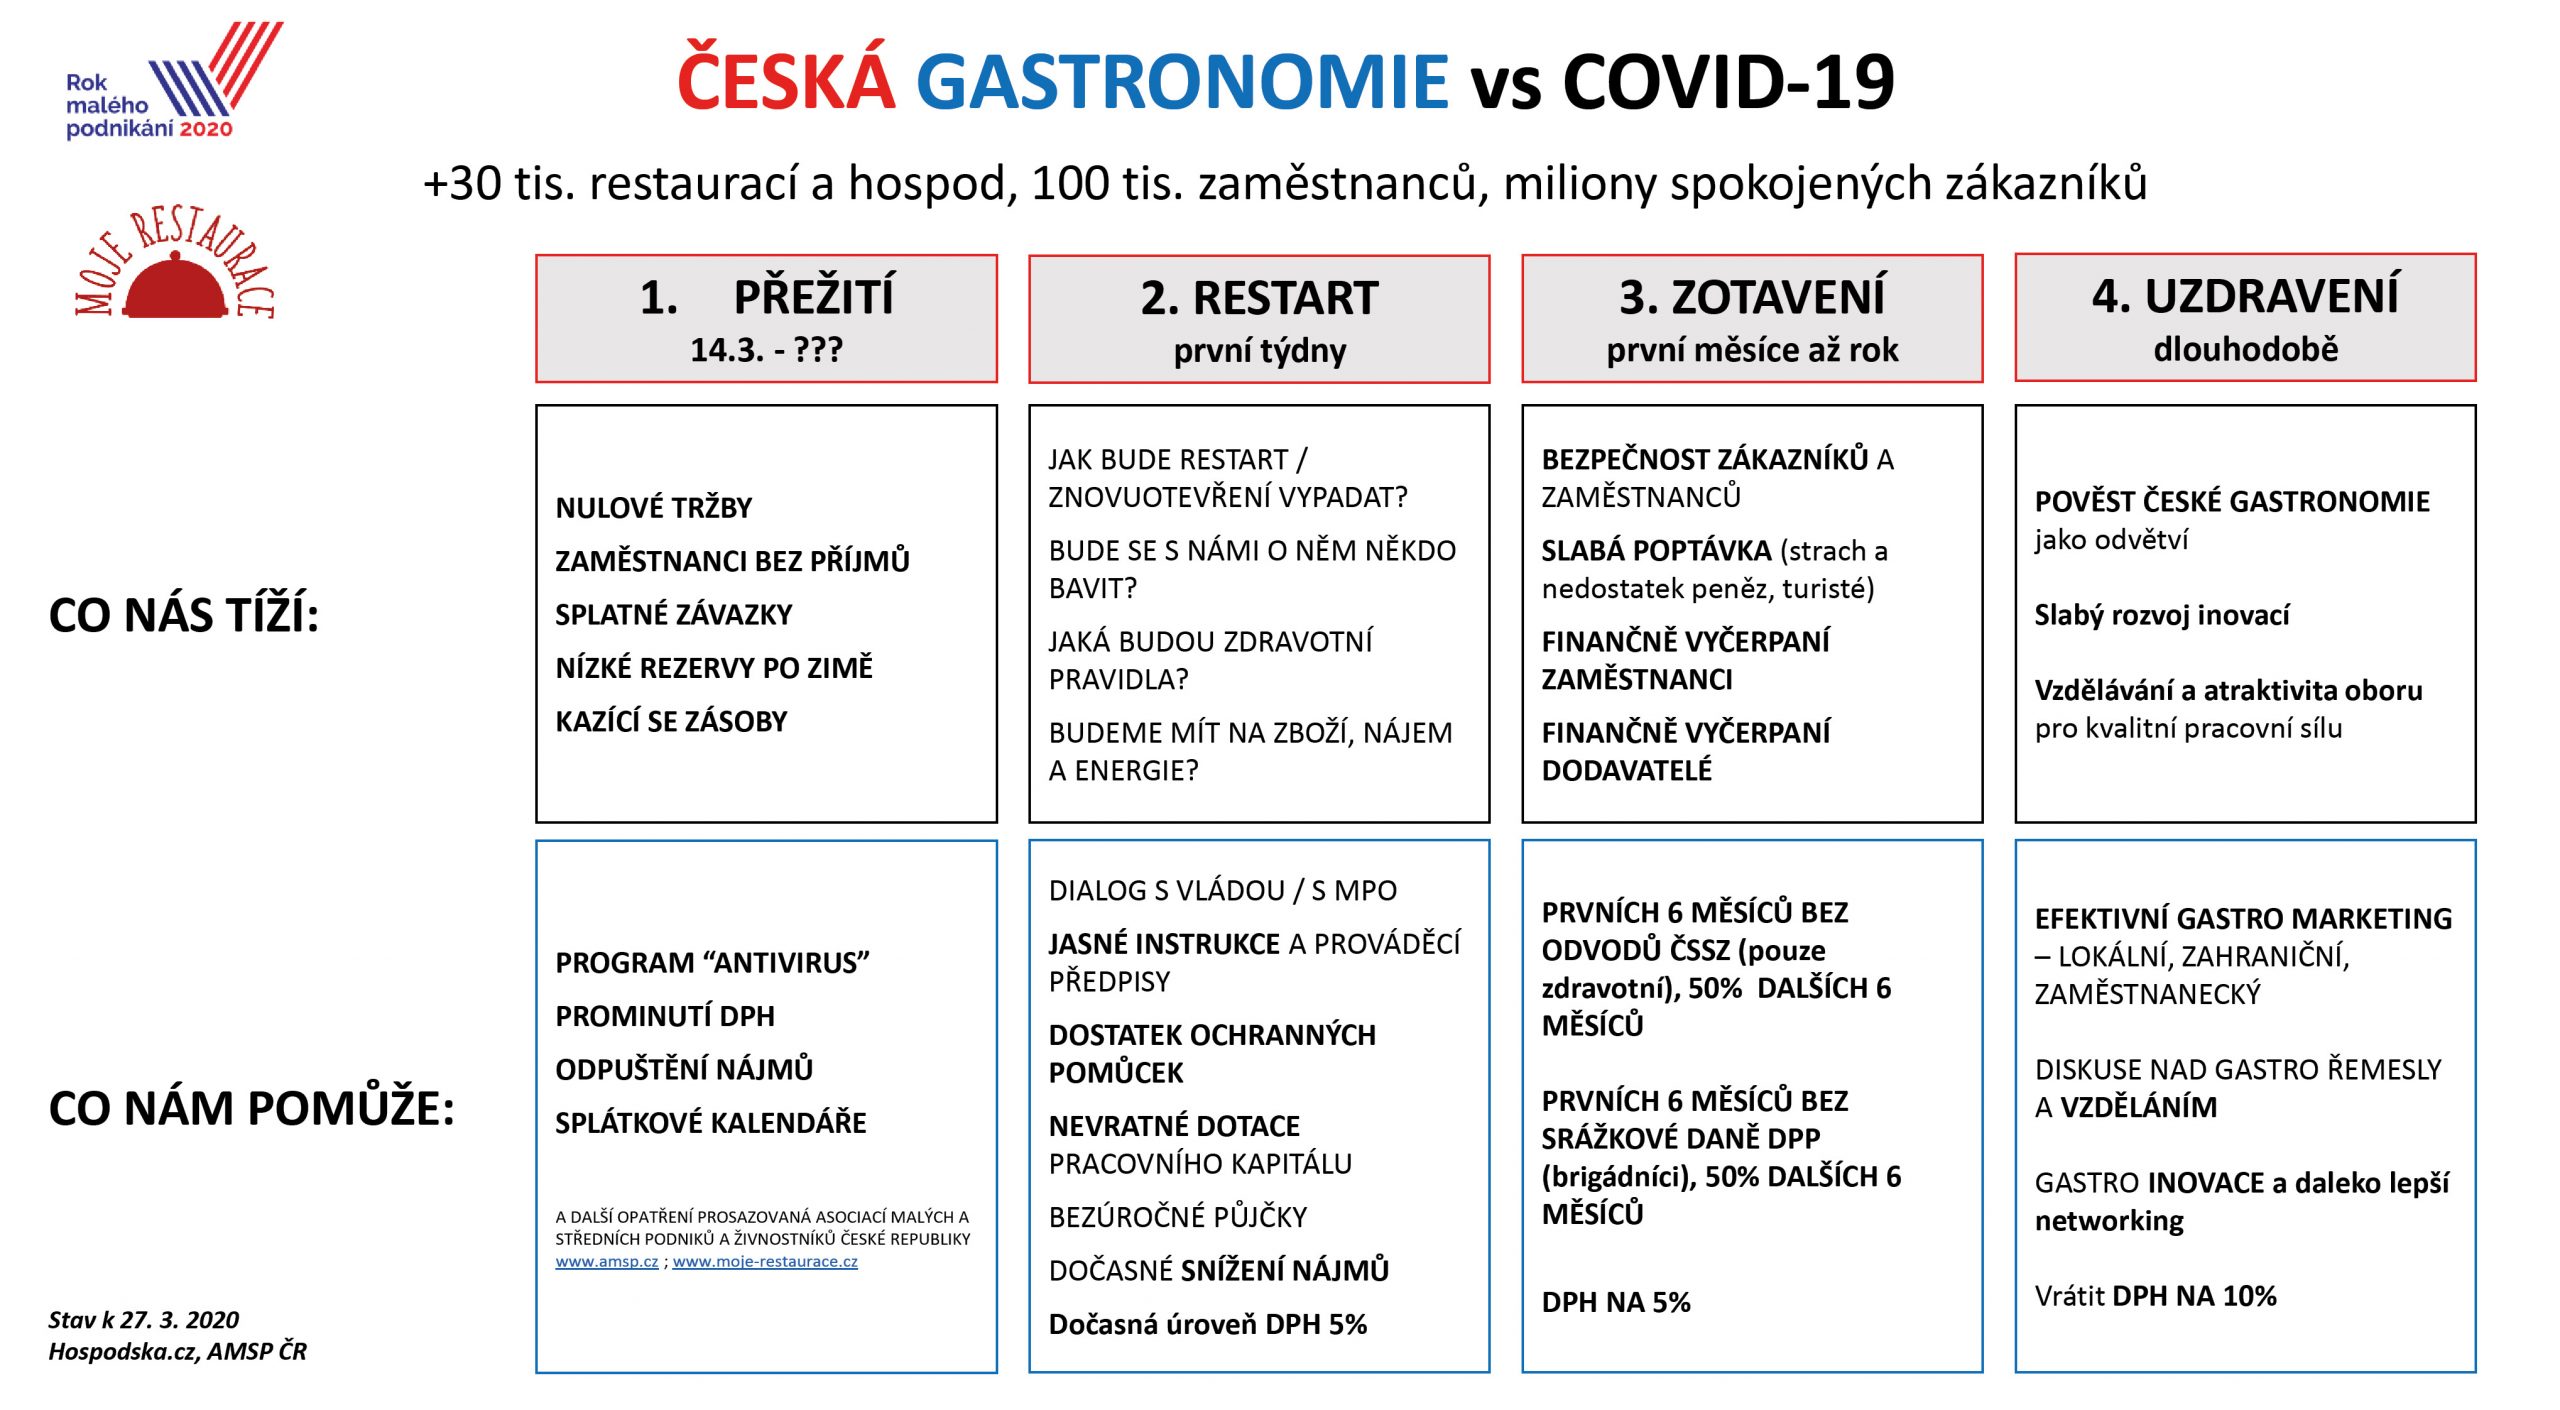 Česká Gastronomie Scaled, GASTROINOVACE.cz